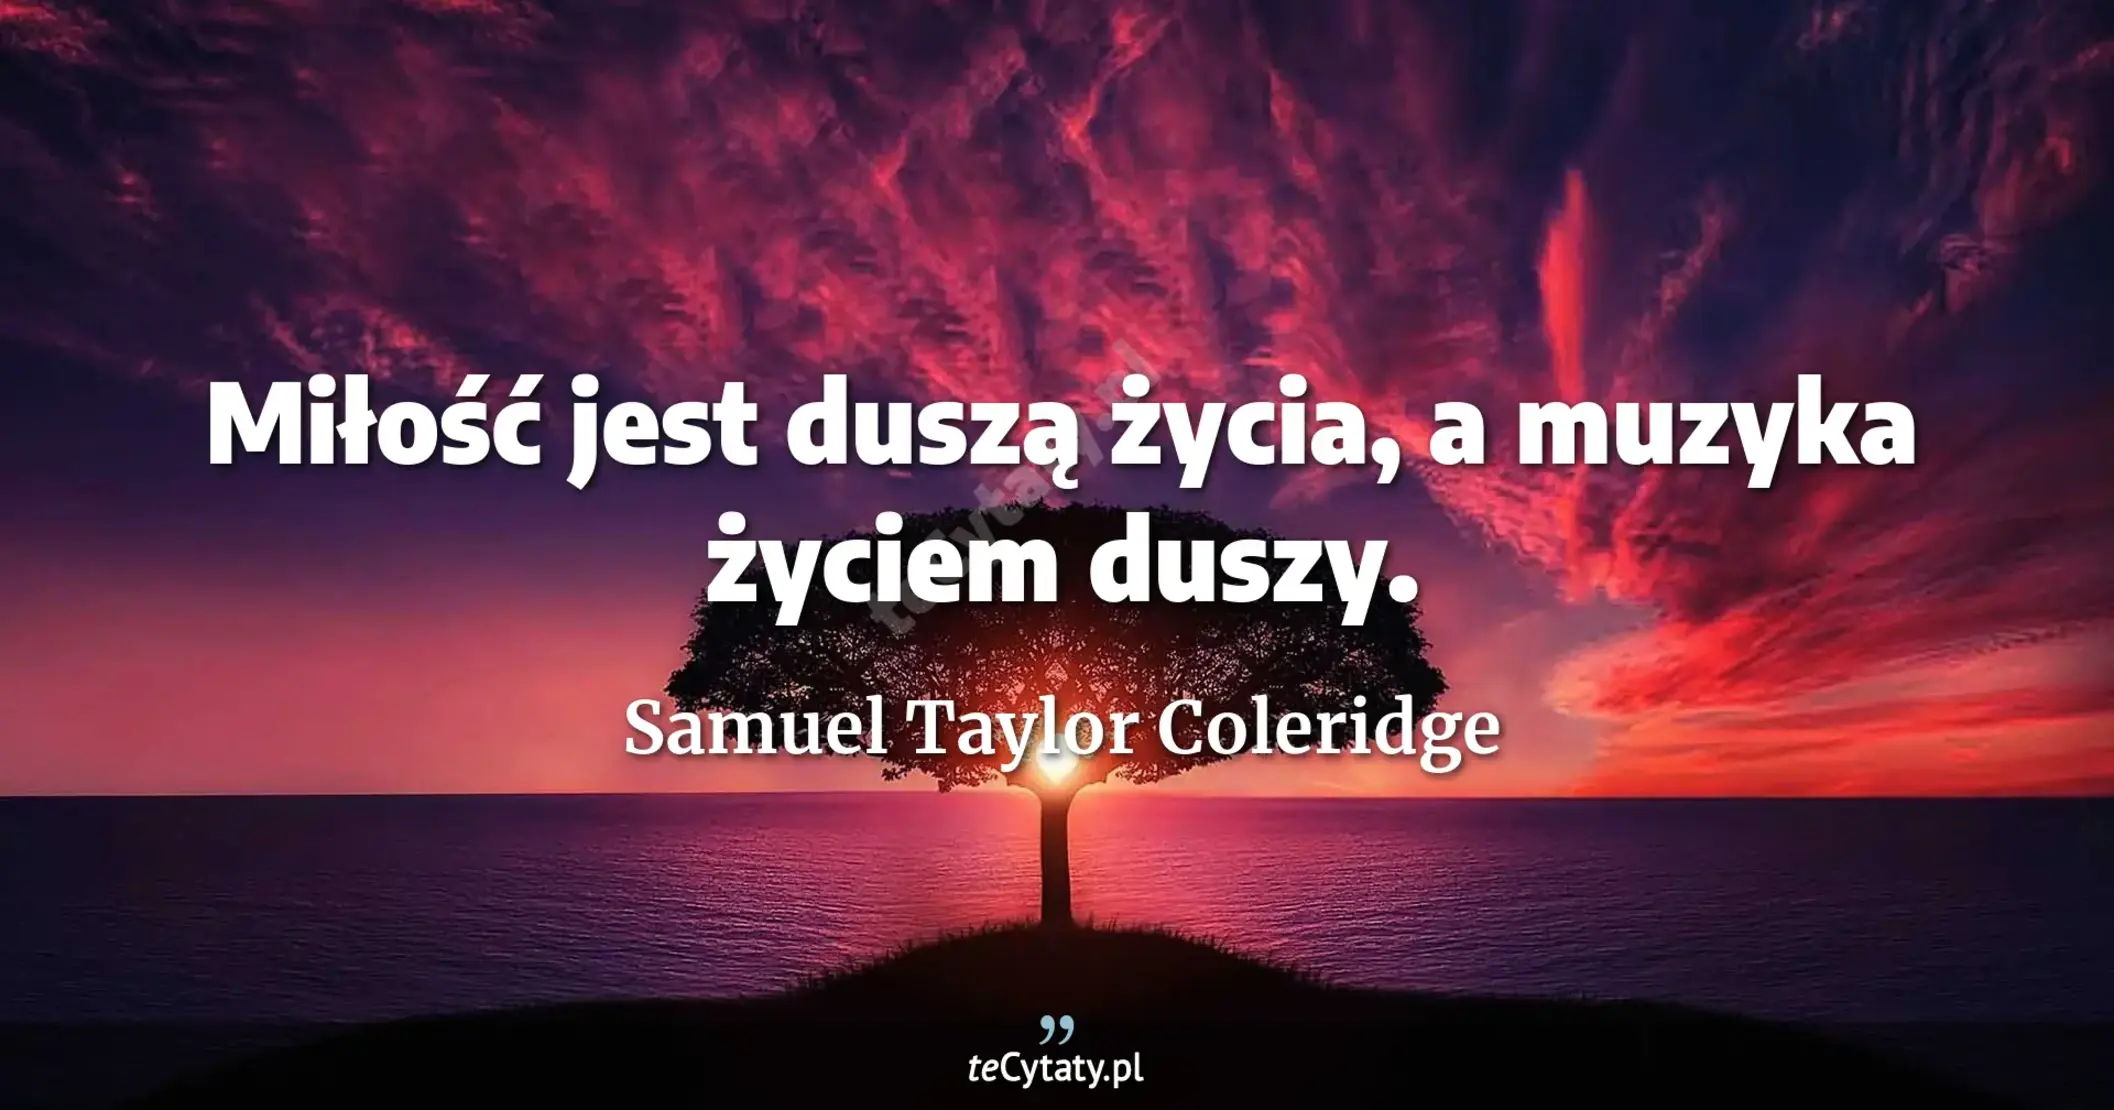 Miłość jest duszą życia, a muzyka życiem duszy. - Samuel Taylor Coleridge